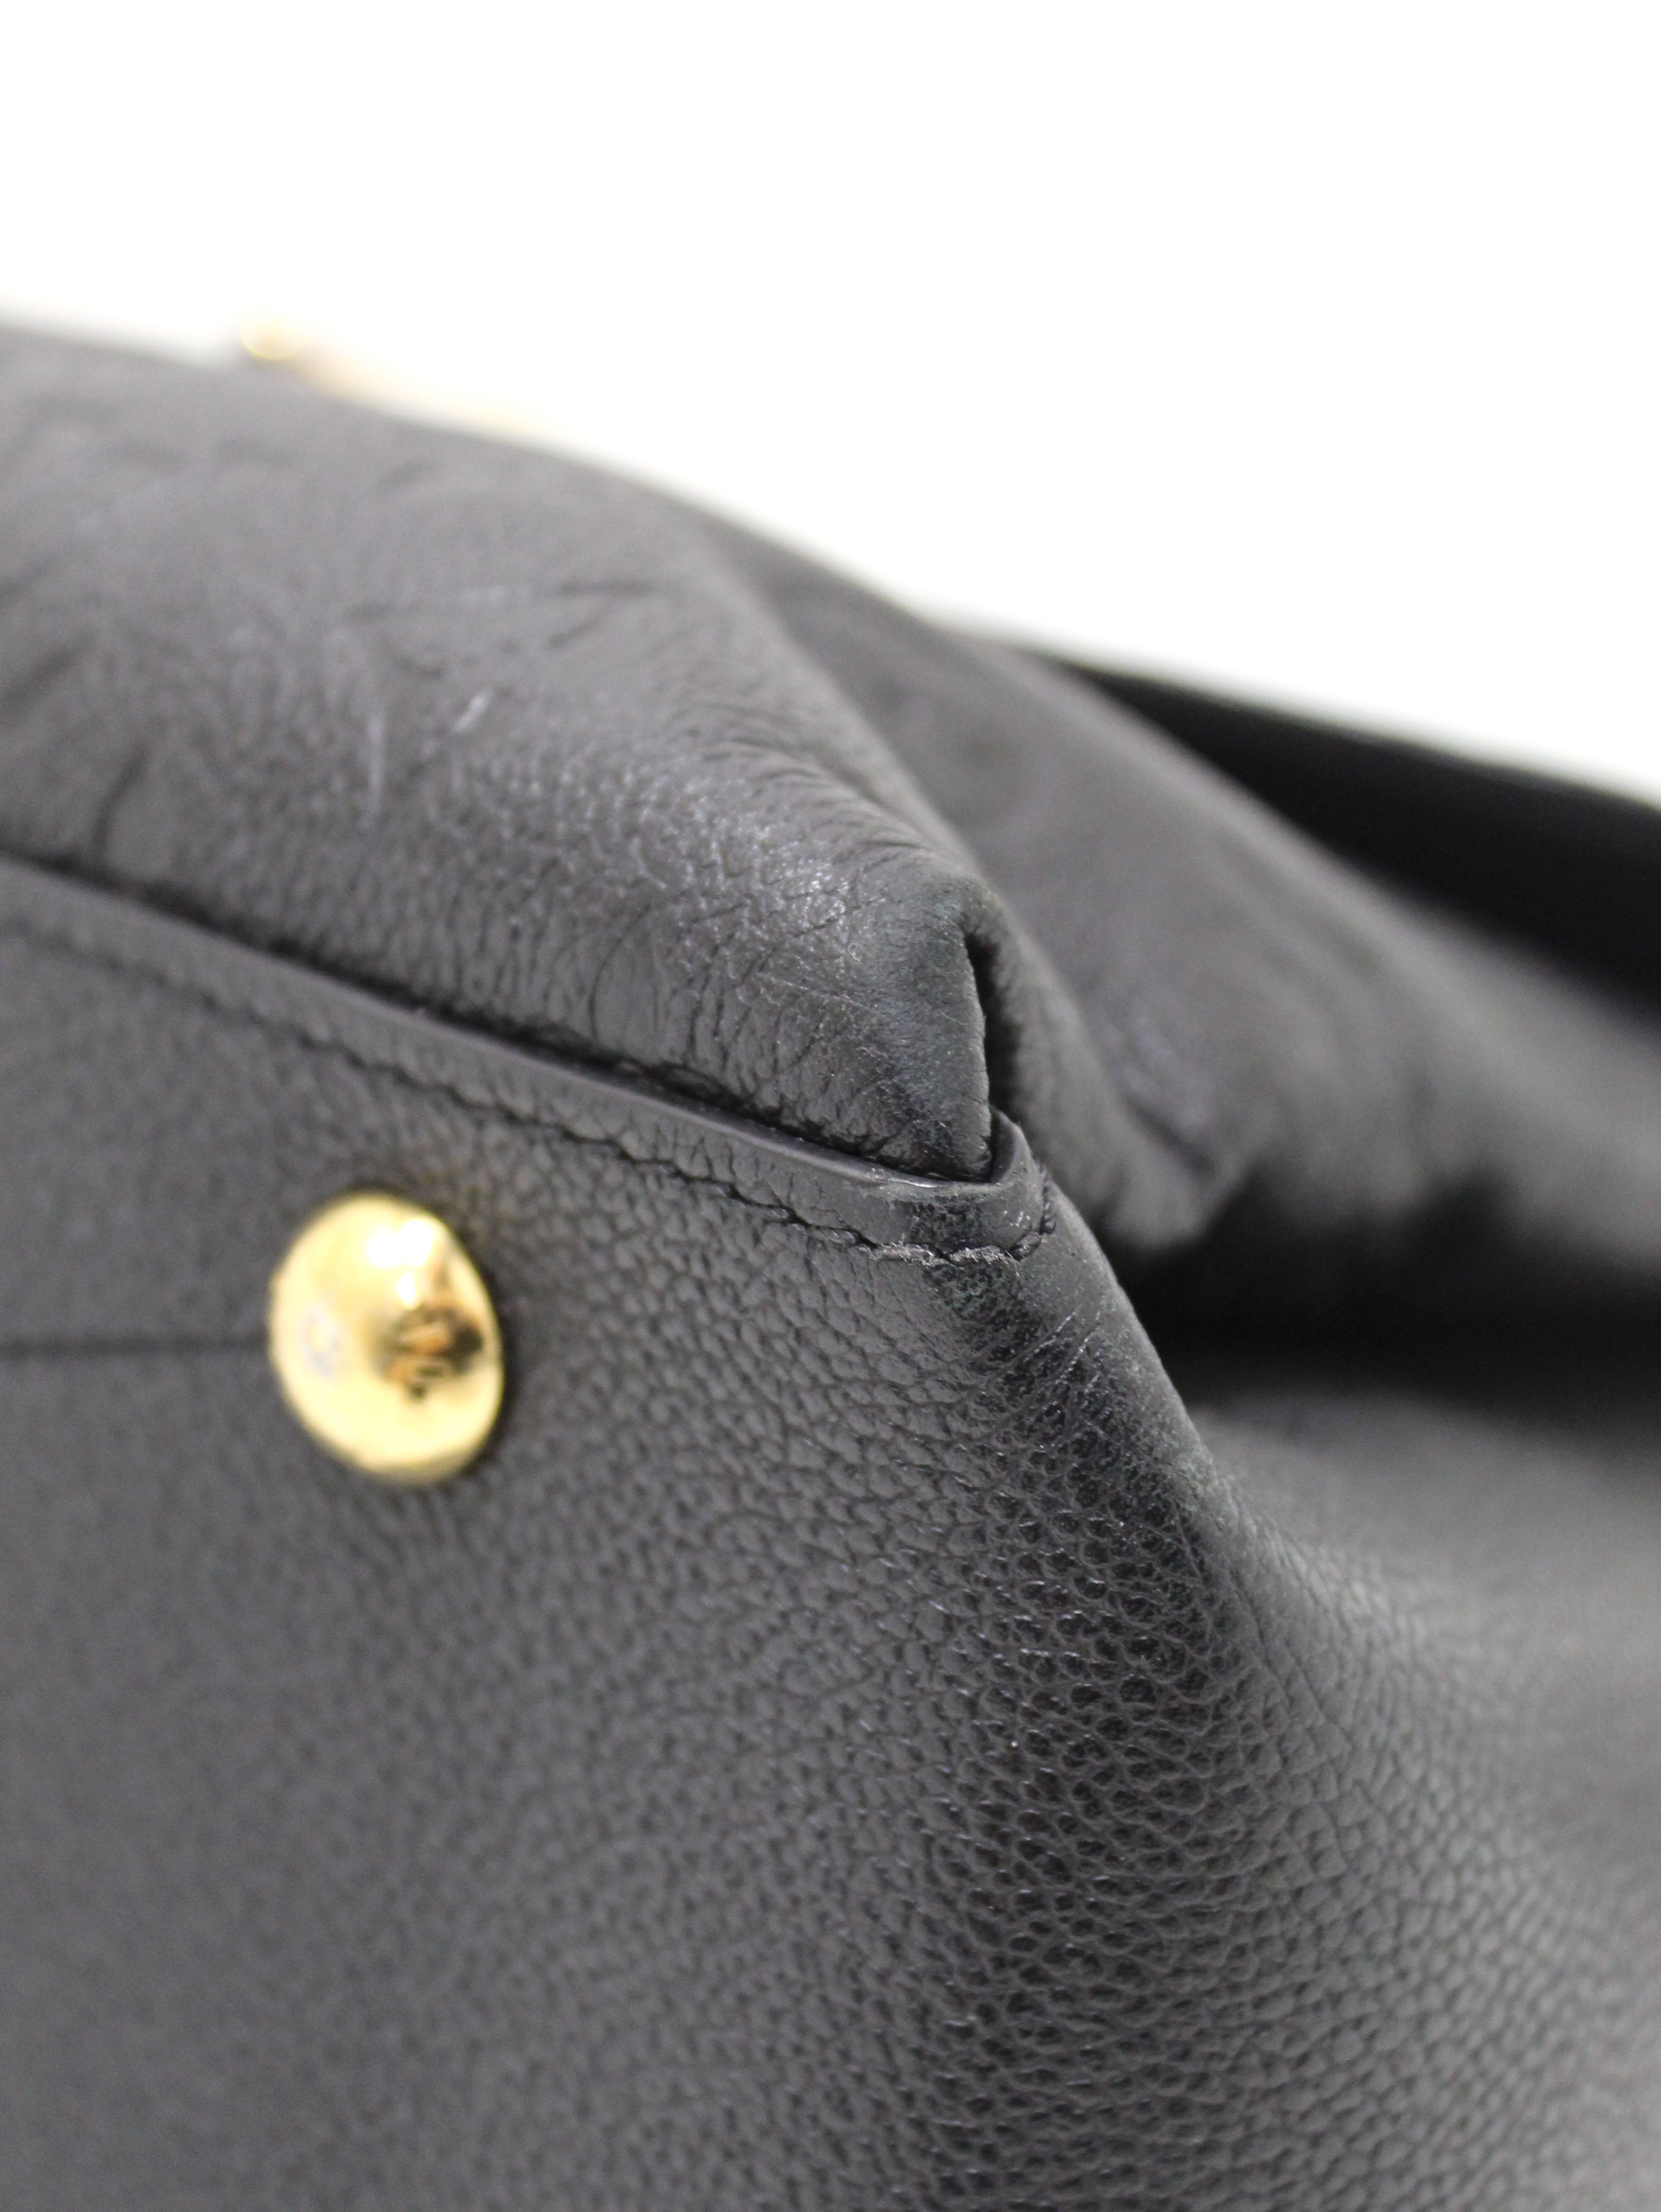 Authentic Louis Vuitton Black Monogram Empreinte Leather George MM Bag